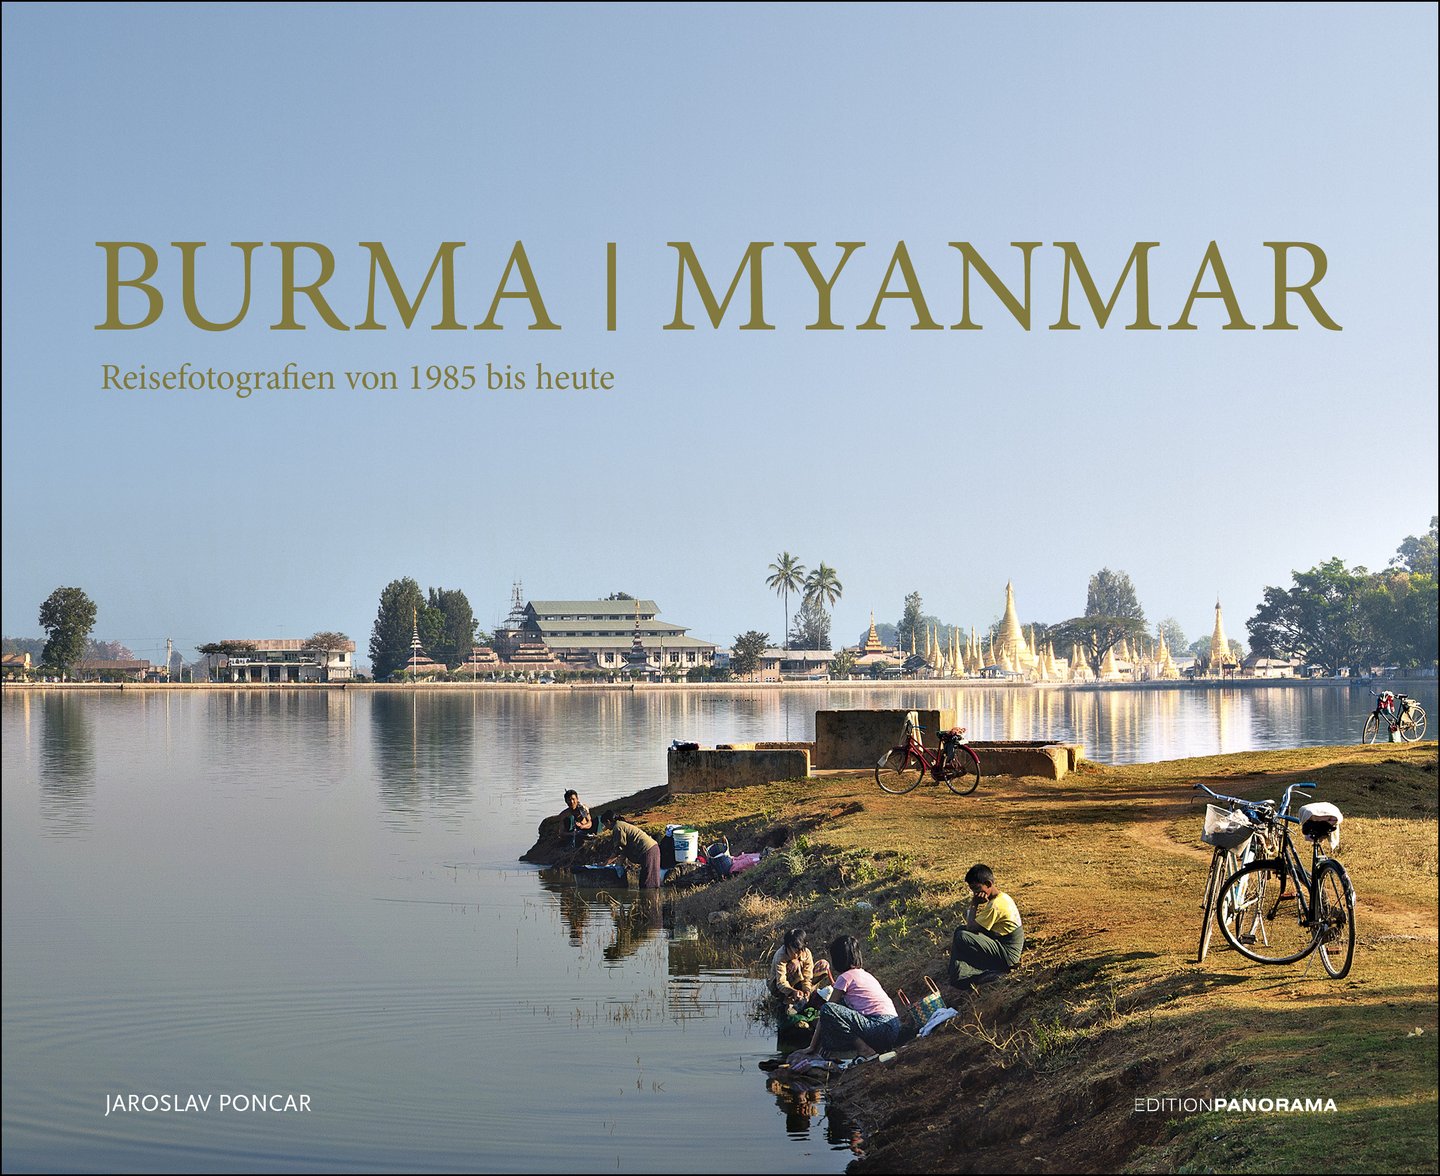 Burma | Myanmar